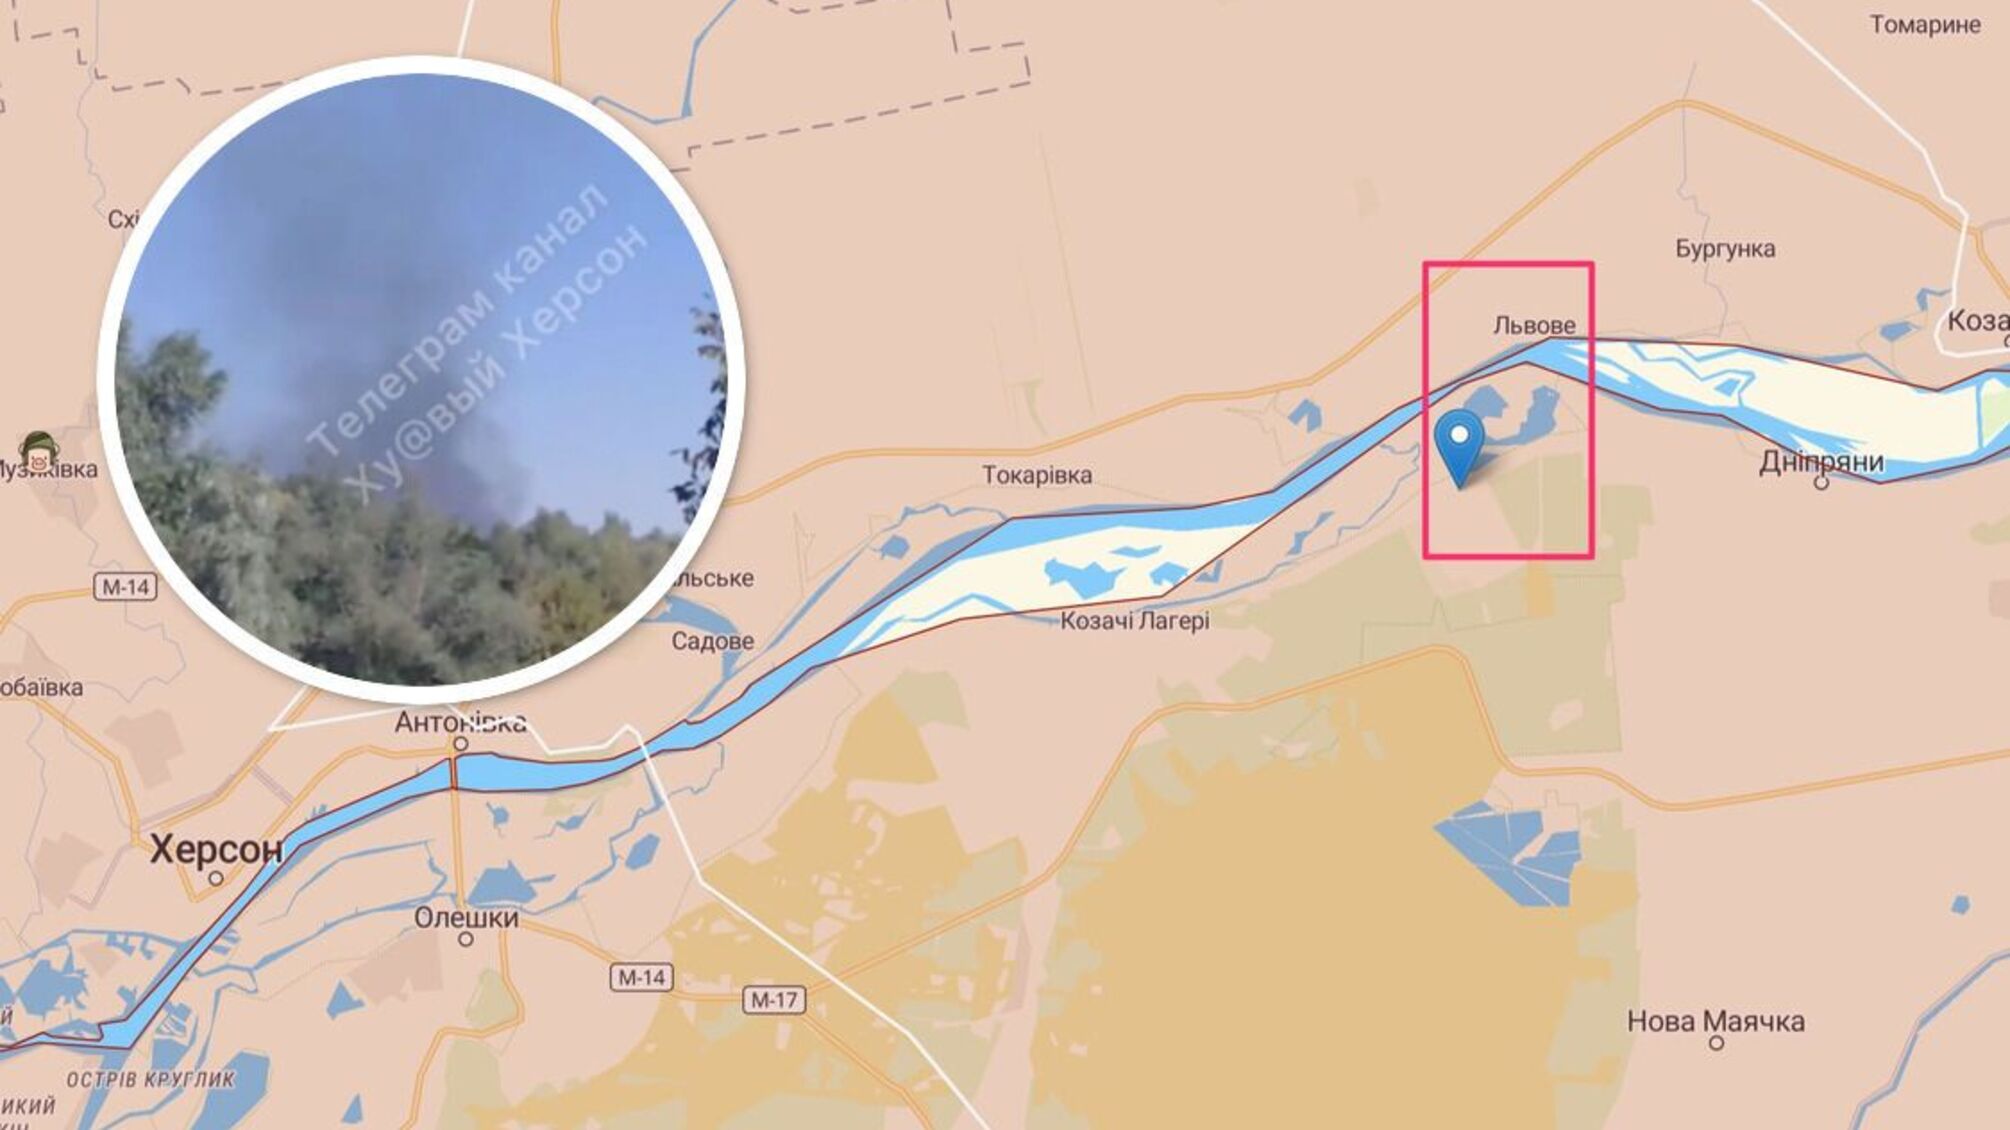 На Херсонщине шумно: информируют о взрывах с детонацией вблизи переправы Корсунка-Львовое (видео)